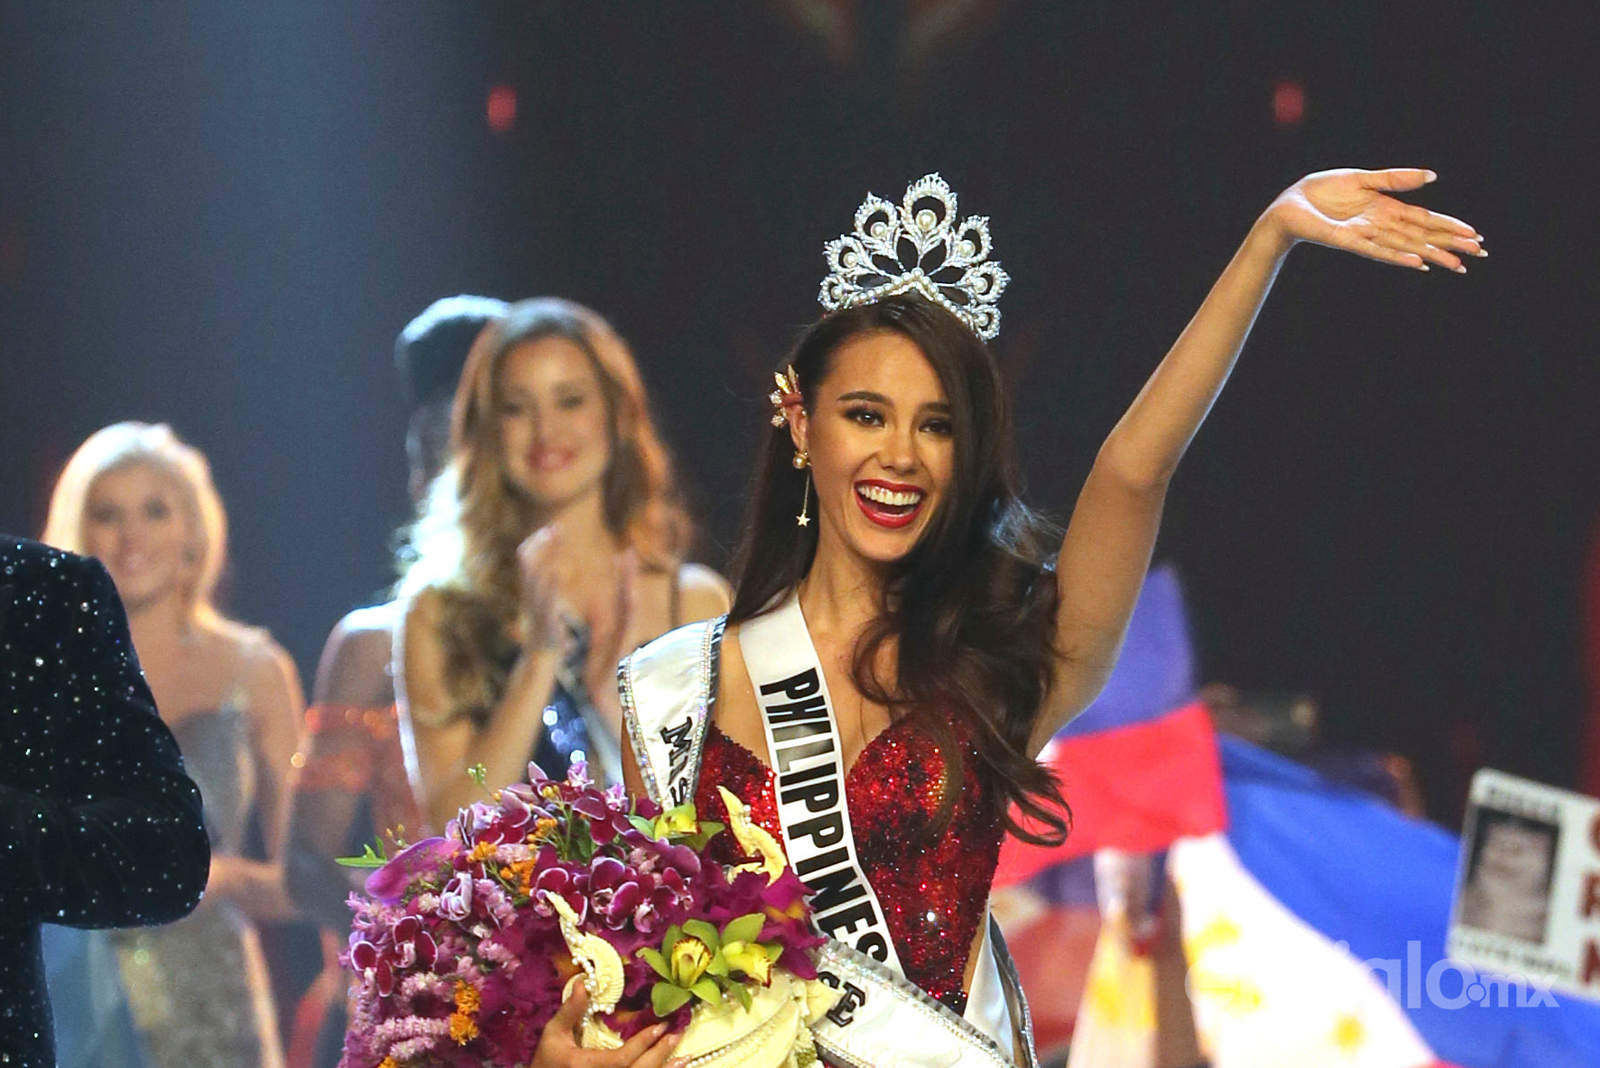 Con una amplia sonrisa, la belleza filipina obtuvo la tiara de manos de su predecesora, la sudafricana Demi-Leigh Nel-Peters, y desfiló frente a un público entregado que coreó desde el inicio de la gala su nombre.
